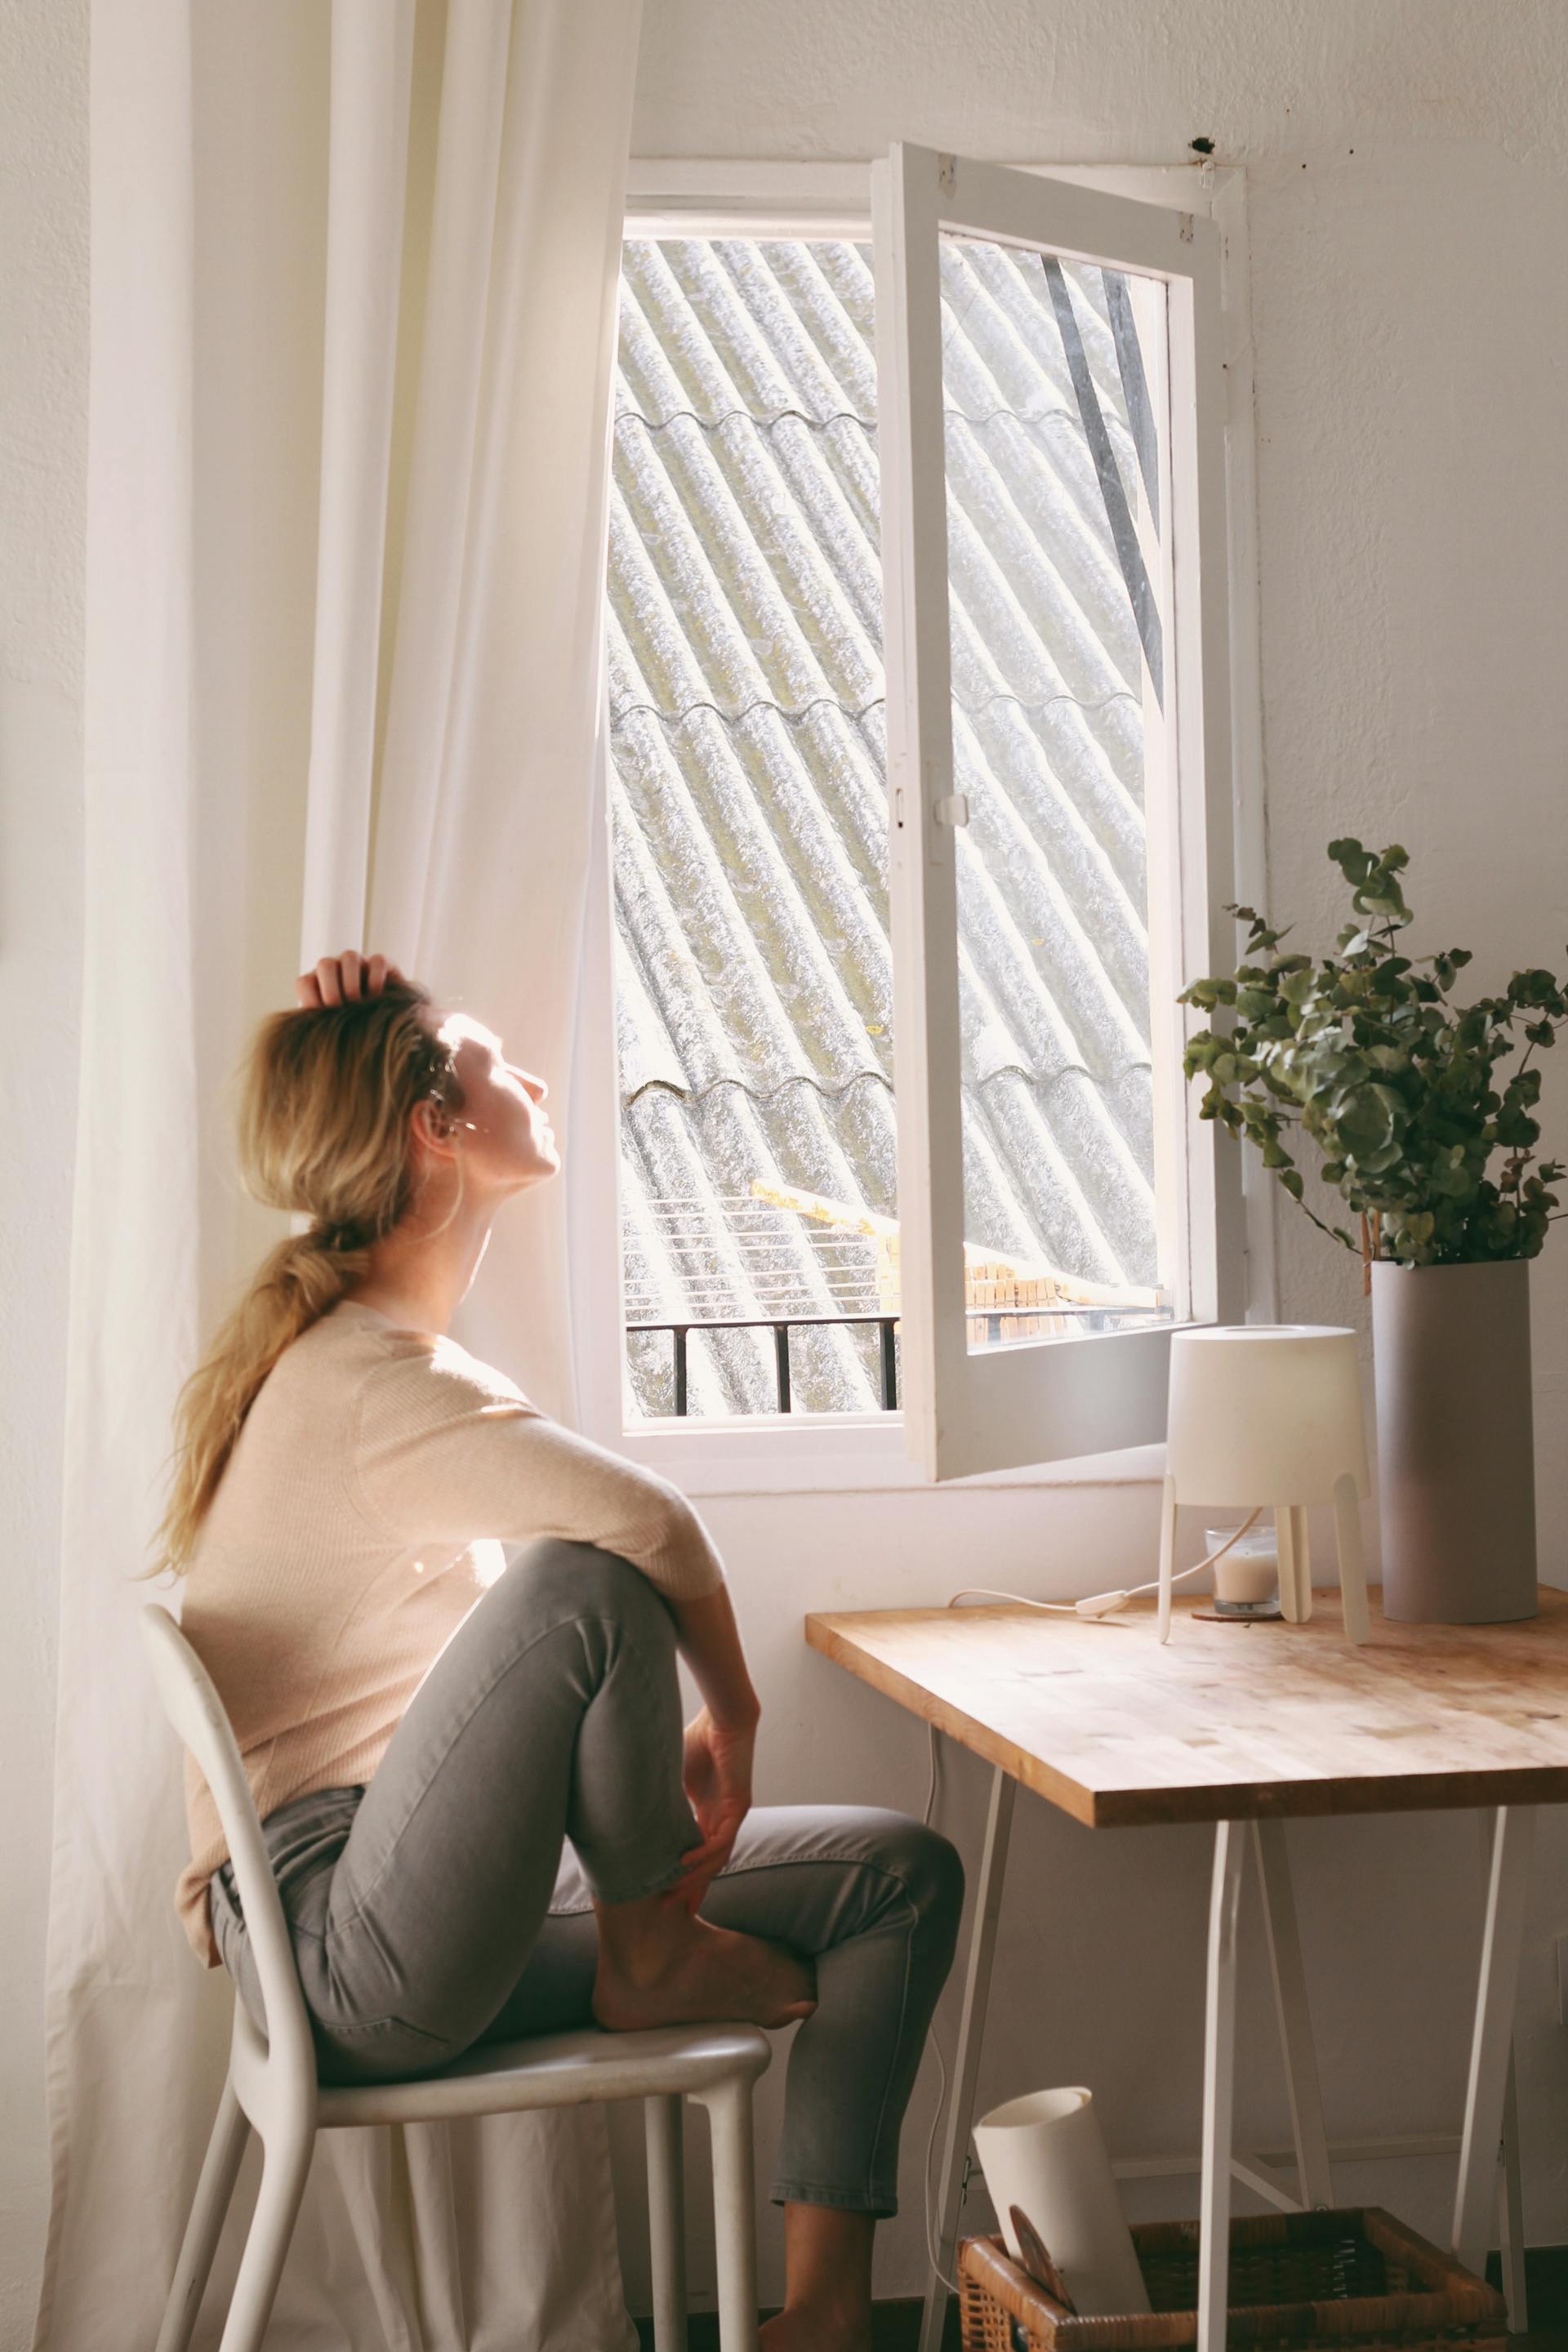 Une femme assise et regardant par la fenêtre | Source : Pexels